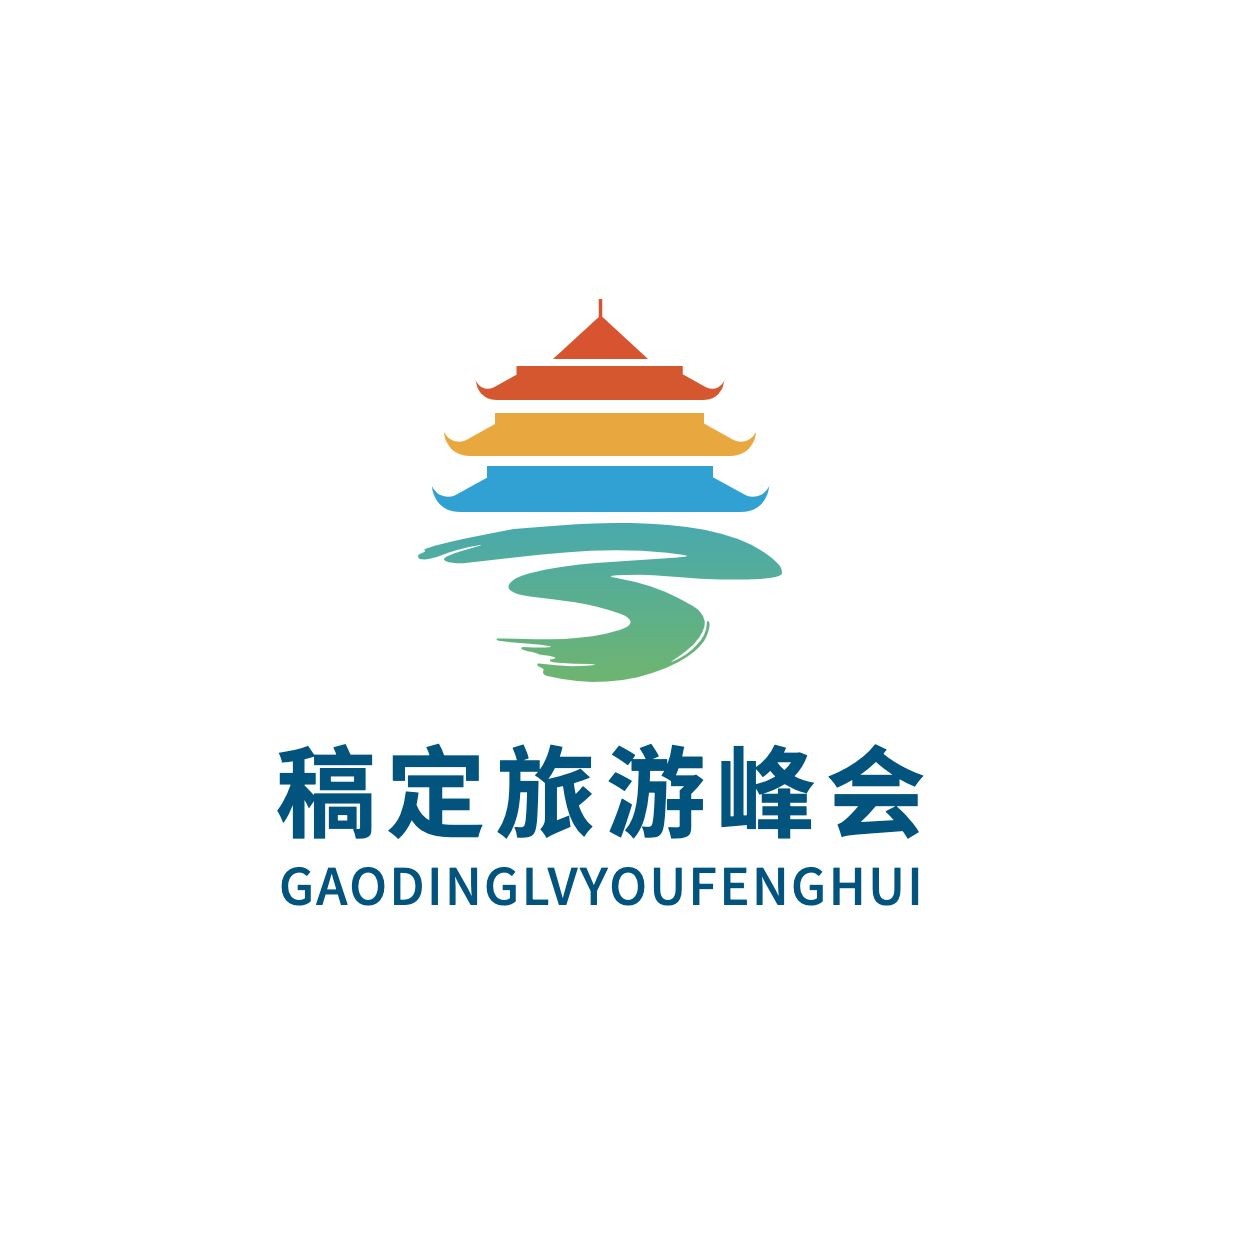 旅游自媒体行业交流峰会/论坛图形logo